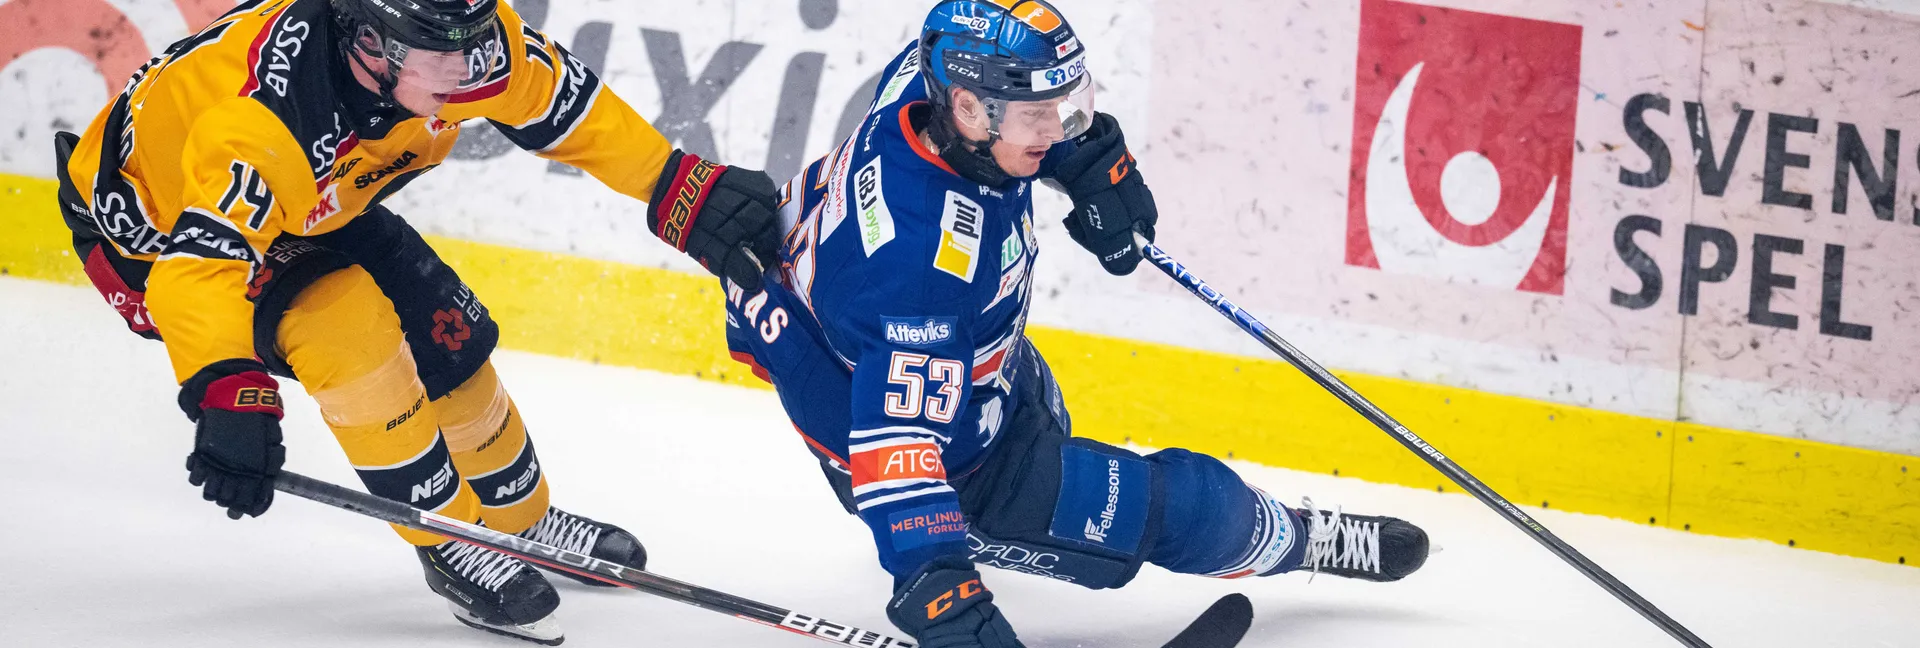 Ishockeymatch mellan Luleå och Växjö i SHL